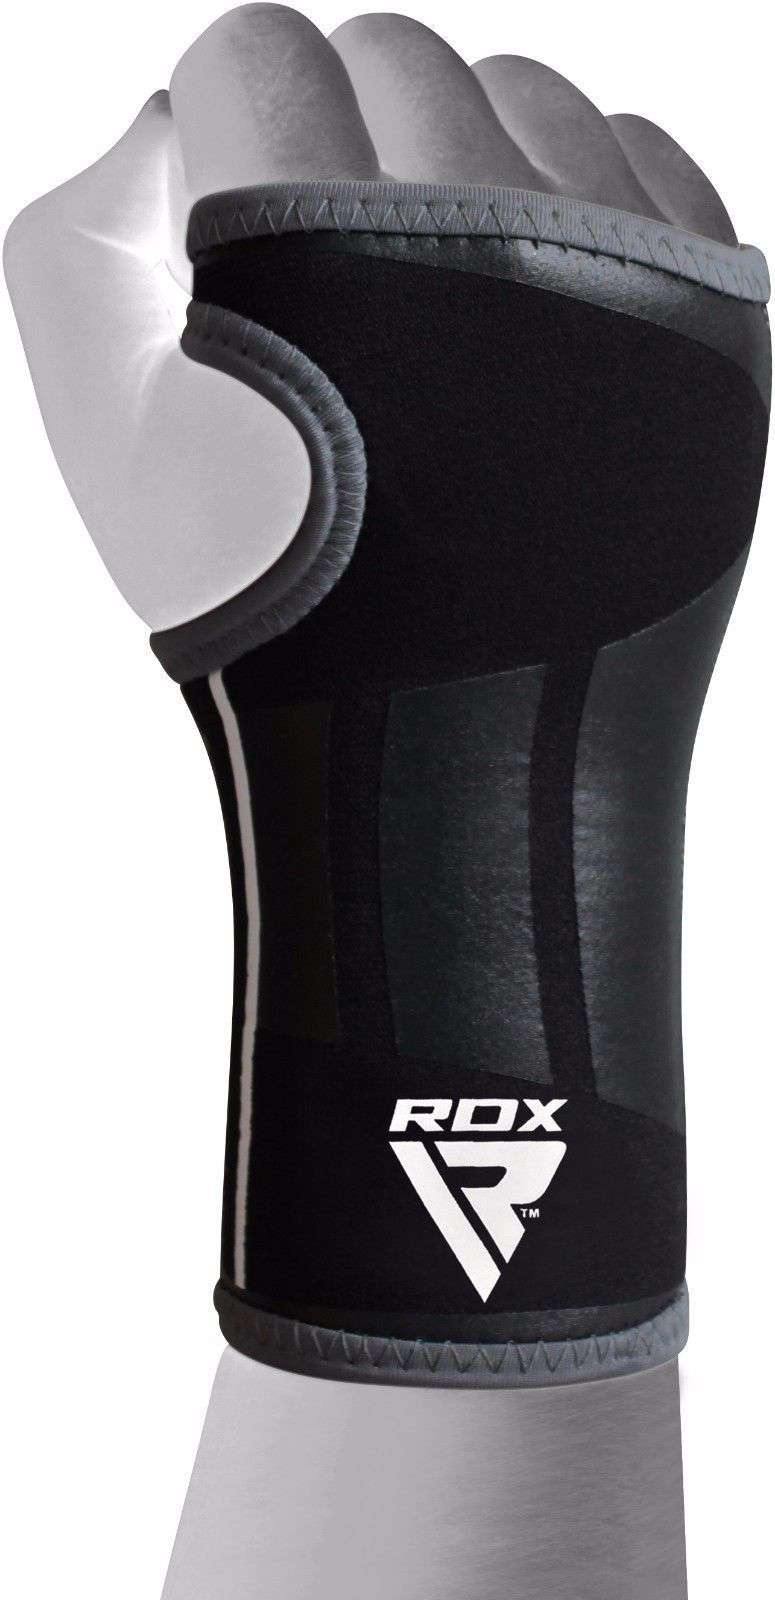 RDX R3 Soporte de muñeca Manga de compresión Gel acolchado para atletas - Chelo Sports